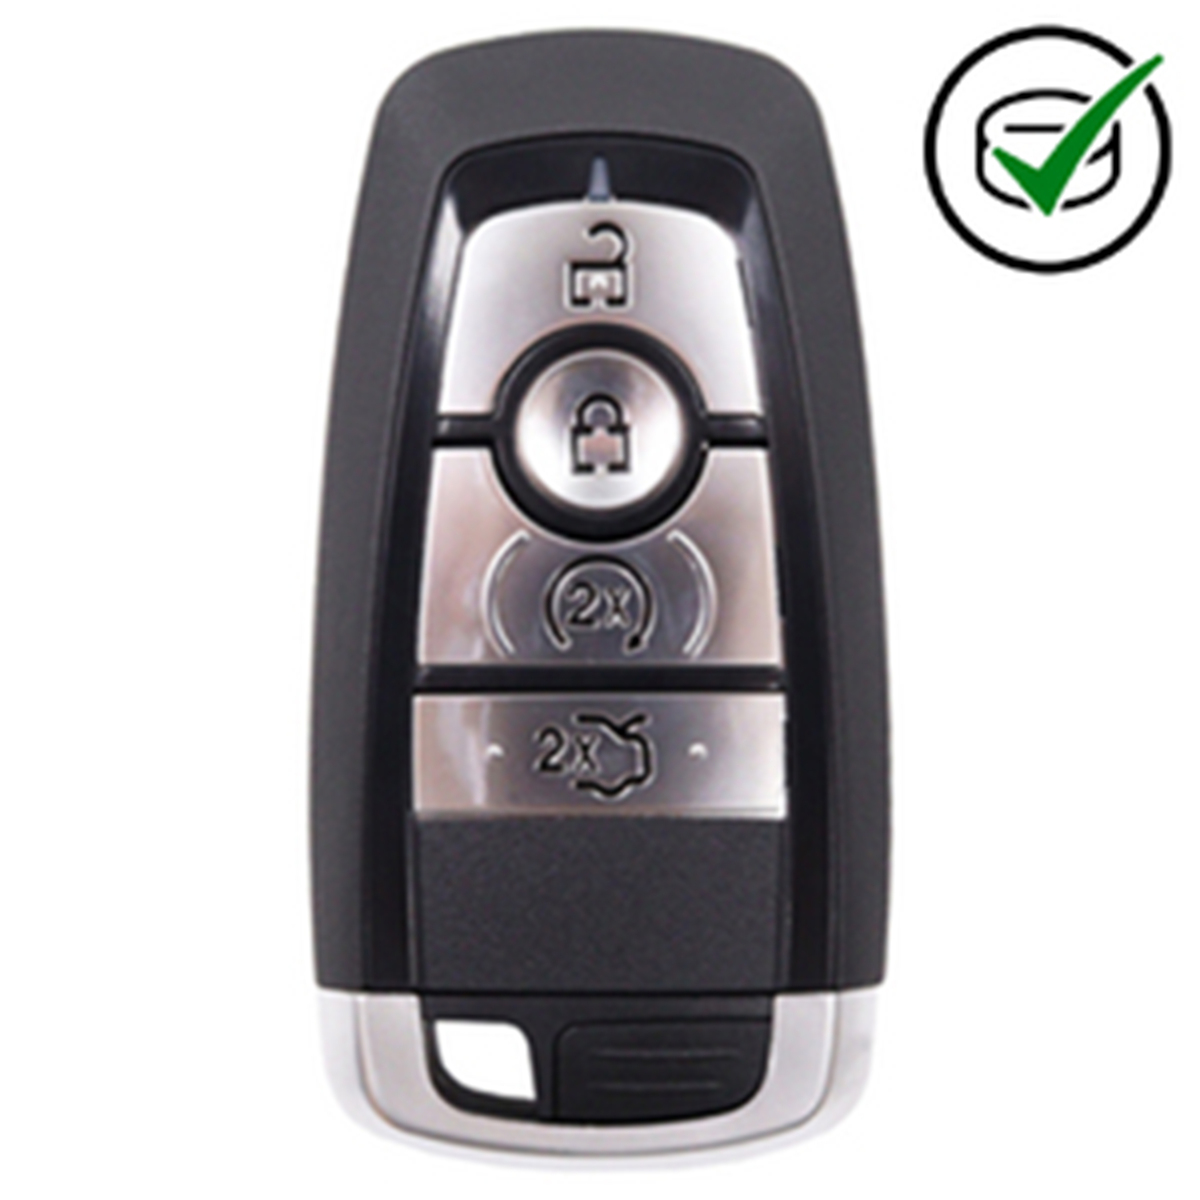 KeyDIY 4 Button Smart Key Ford Style